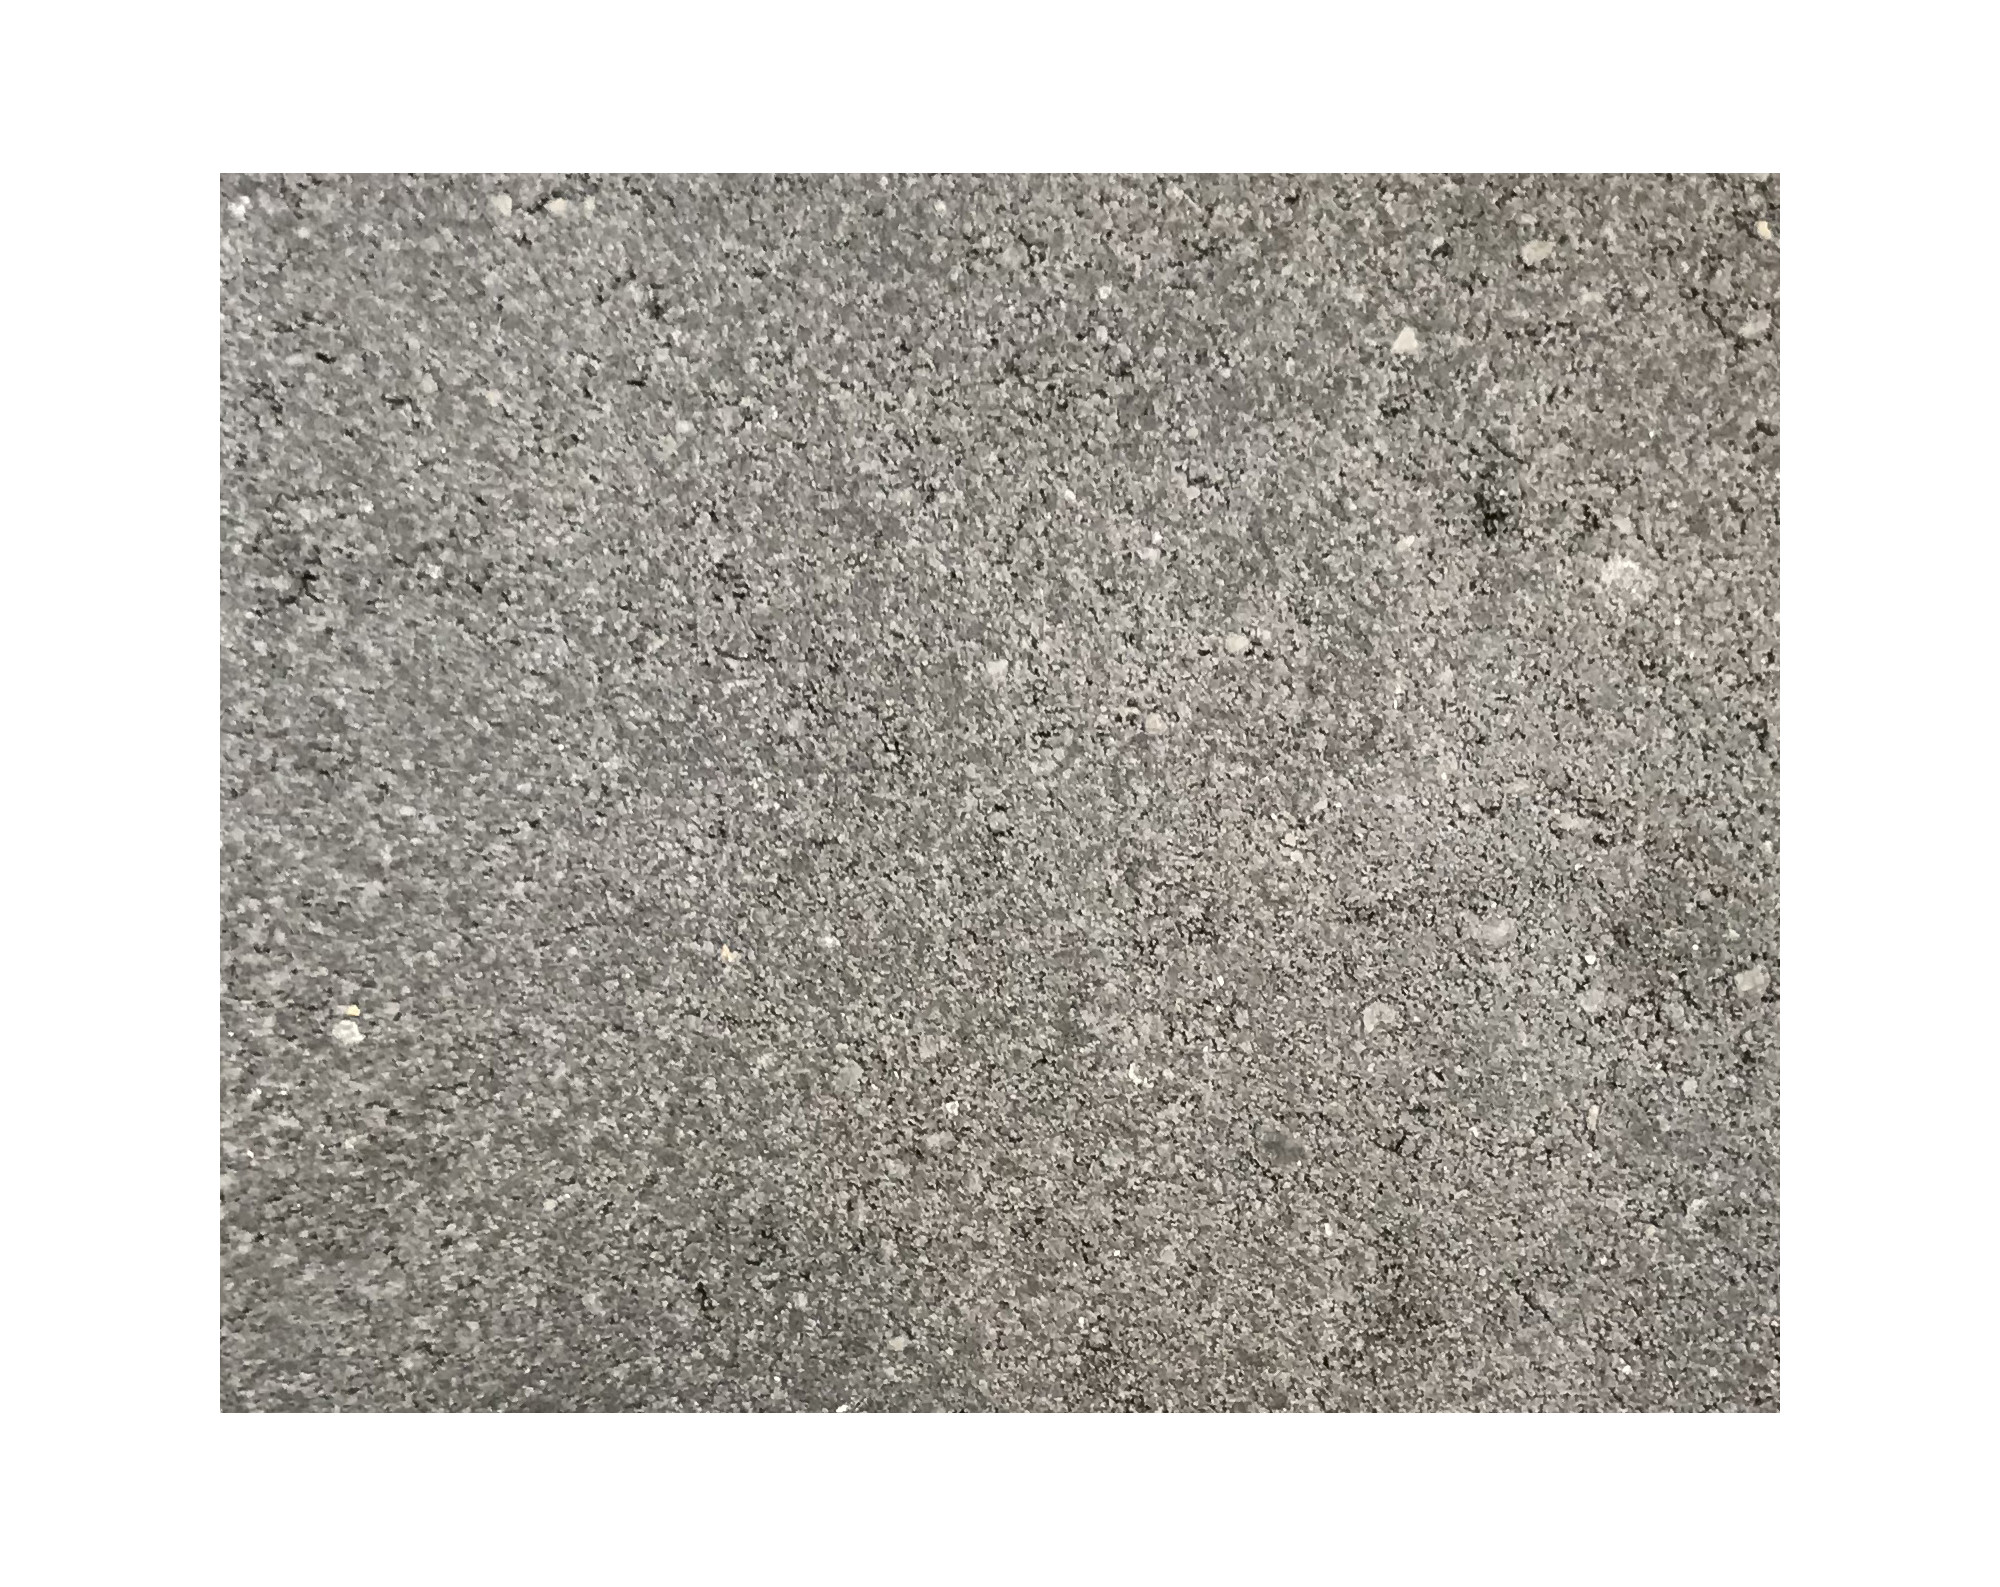 Harmo roc athenset, rustica-serie, ovaal d: 4,20mx9,50m, a.zwart, beton